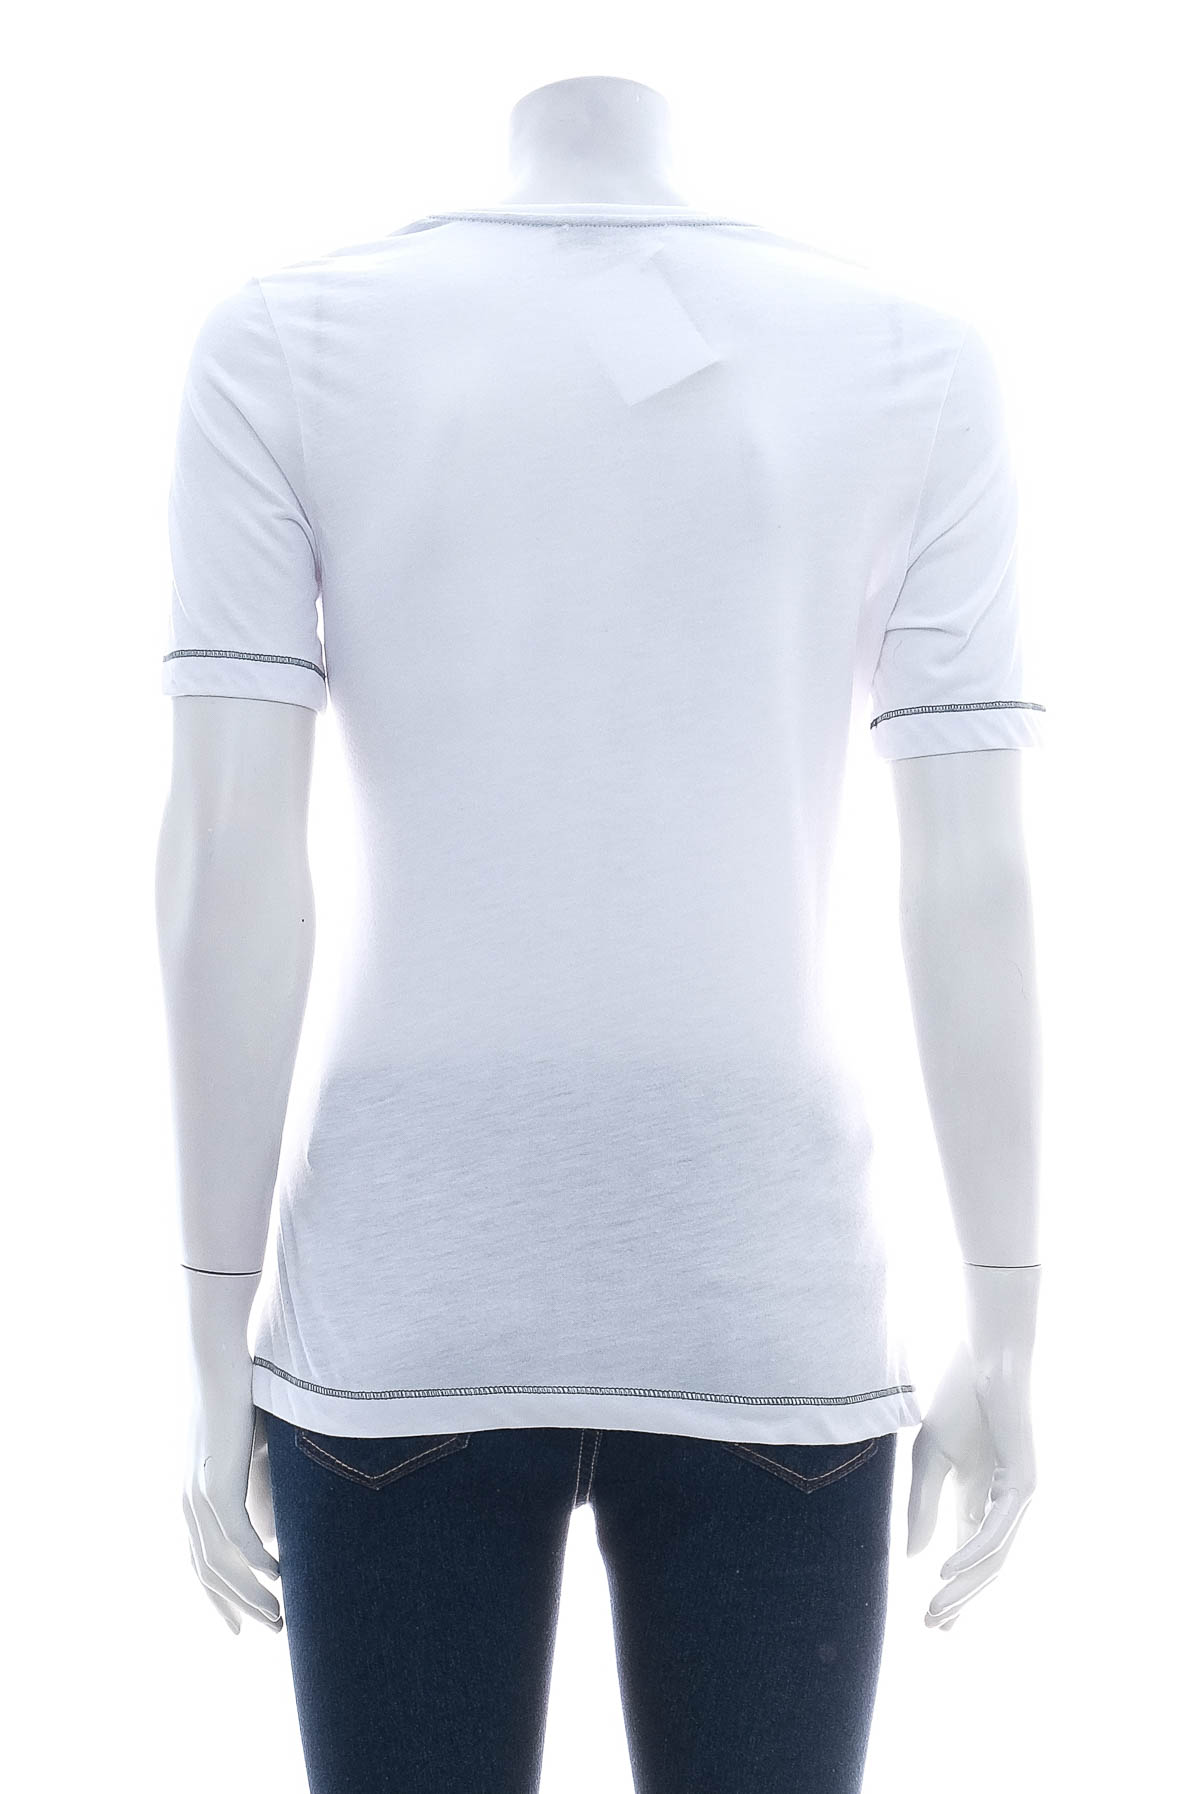 Women's t-shirt - Claude Arielle - 1